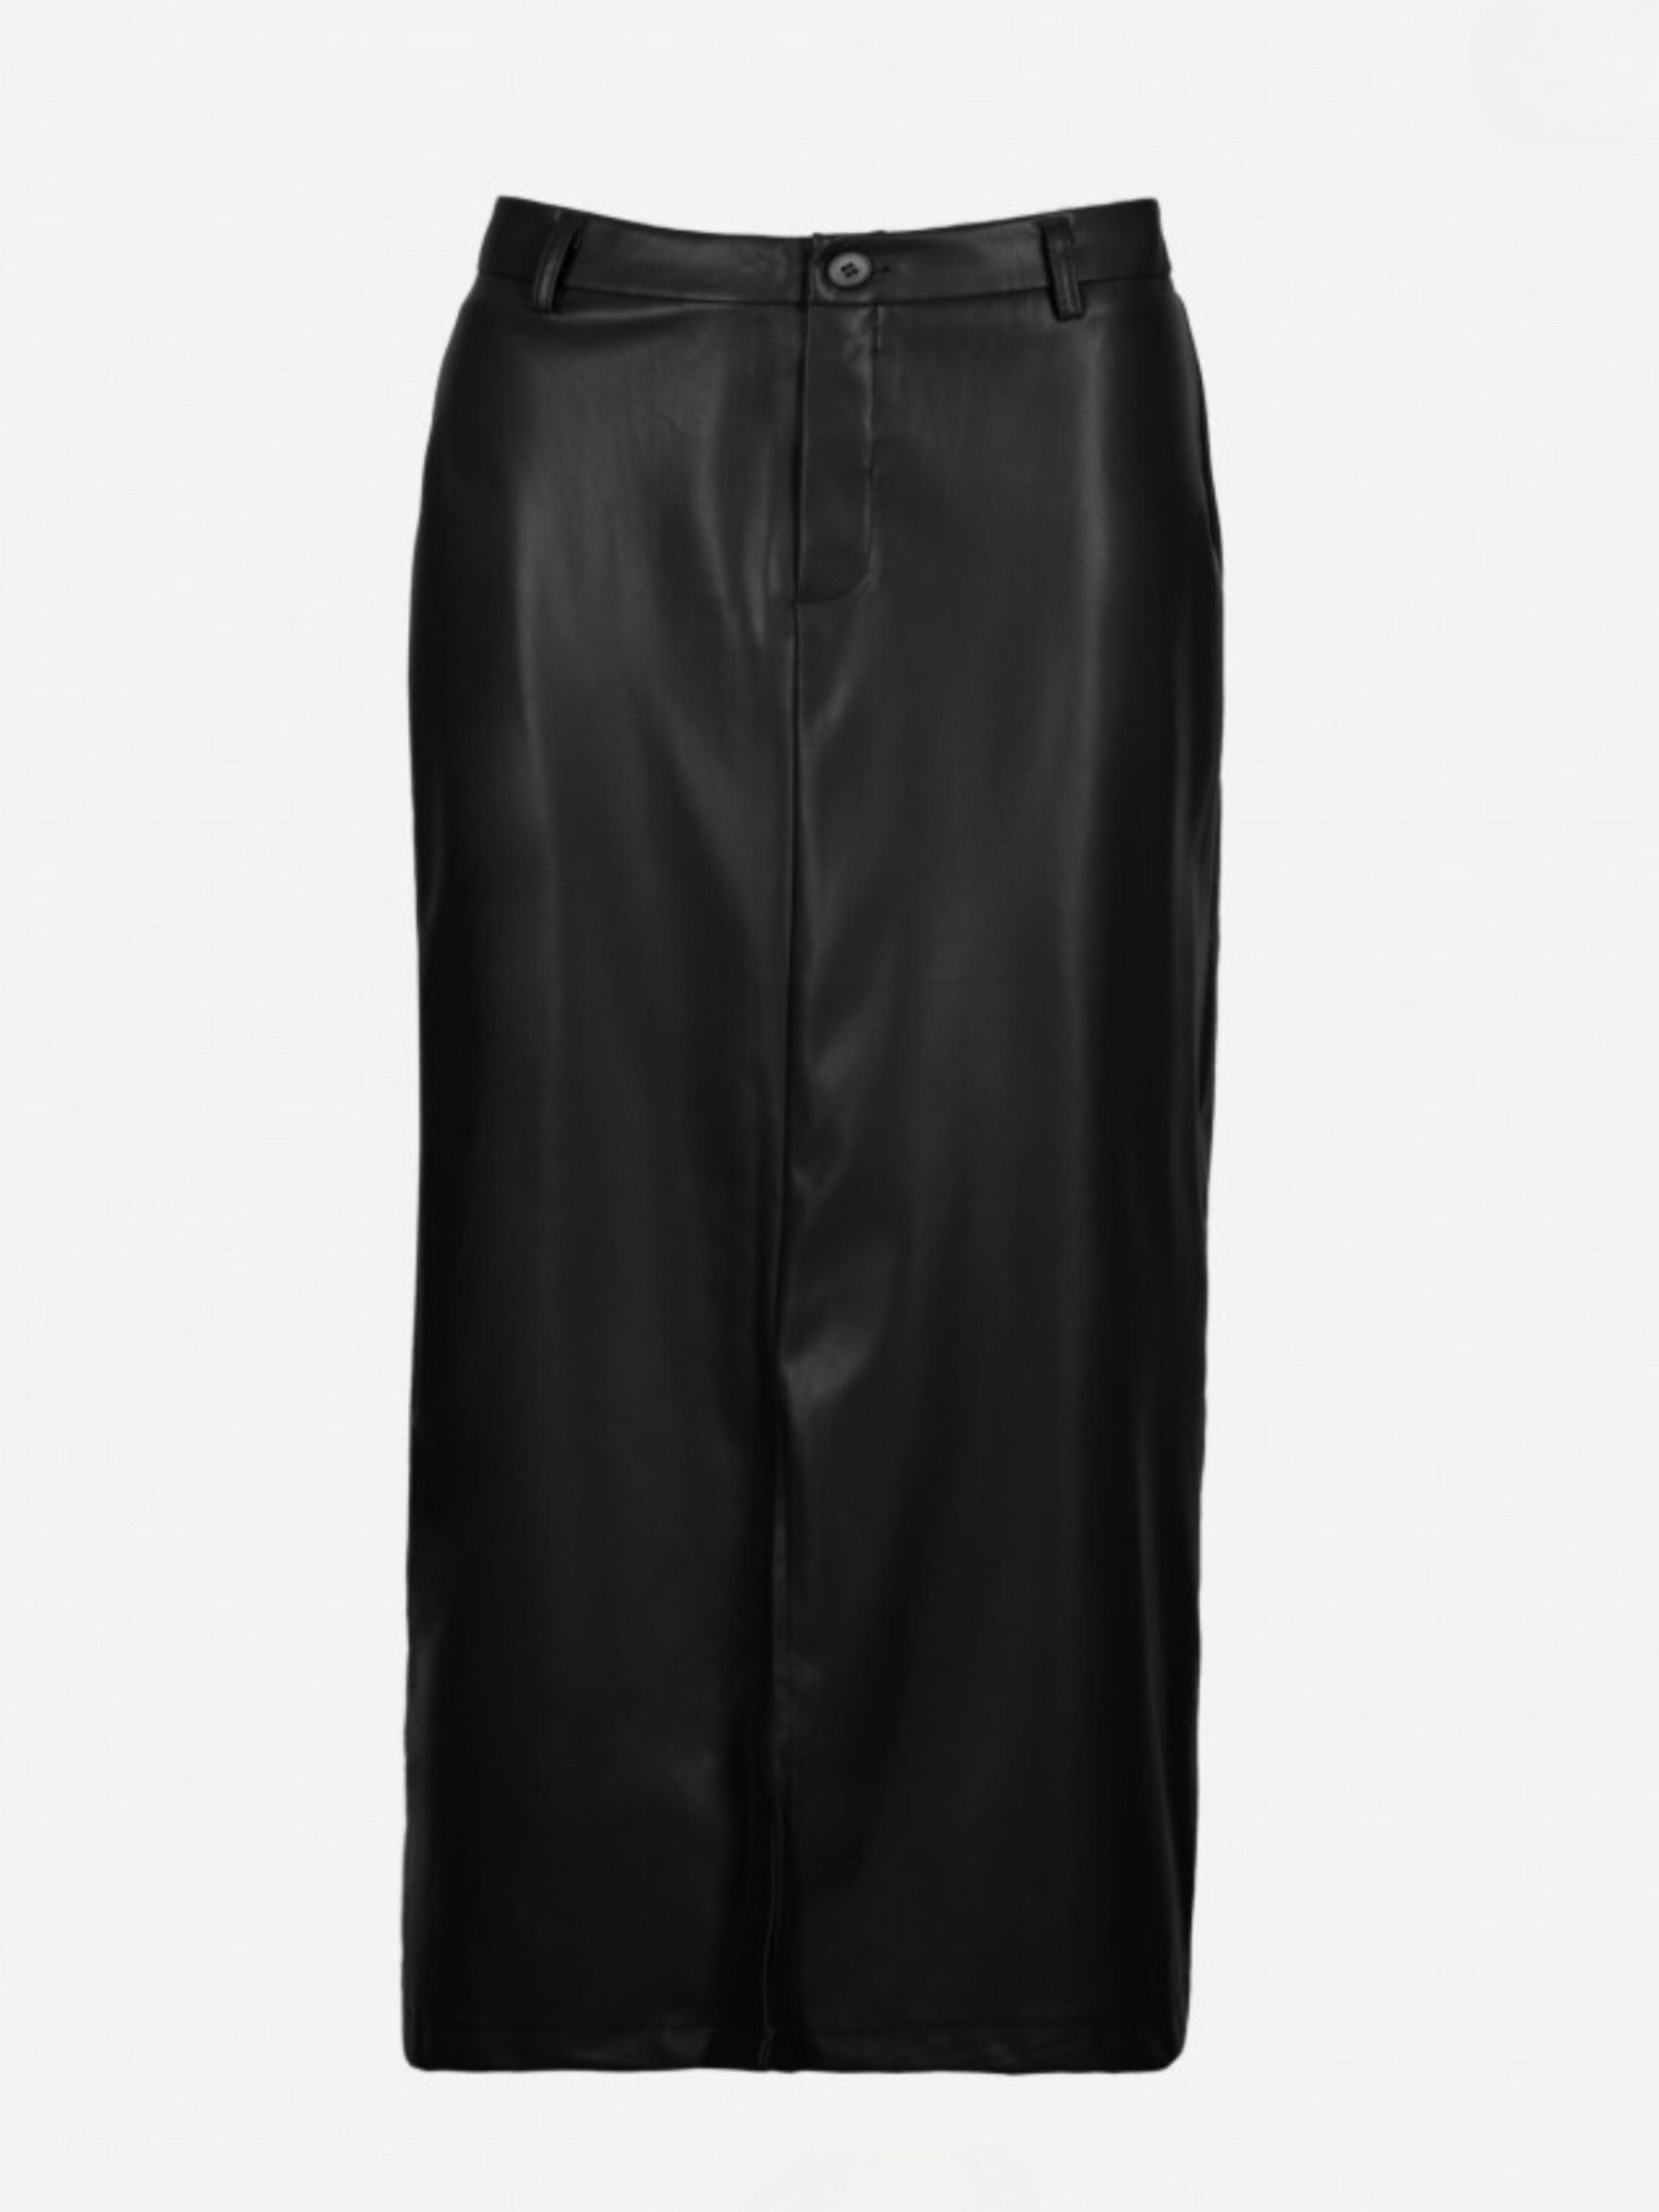 julina black leather midi skirt